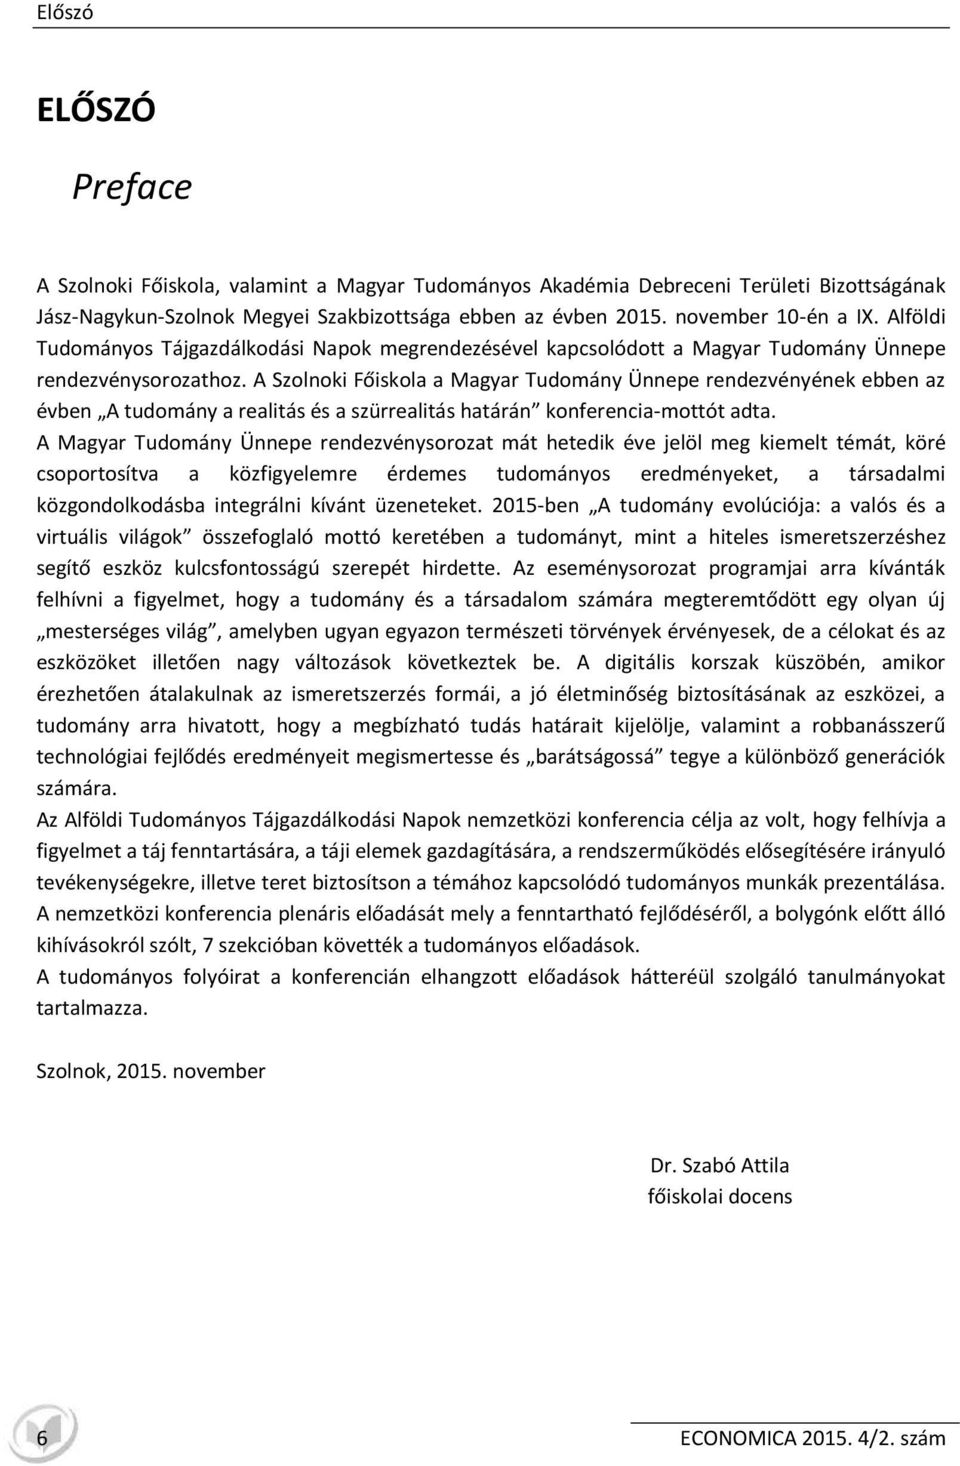 A Szolnoki Főiskola a Magyar Tudomány Ünnepe rendezvényének ebben az évben A tudomány a realitás és a szürrealitás határán konferencia-mottót adta.